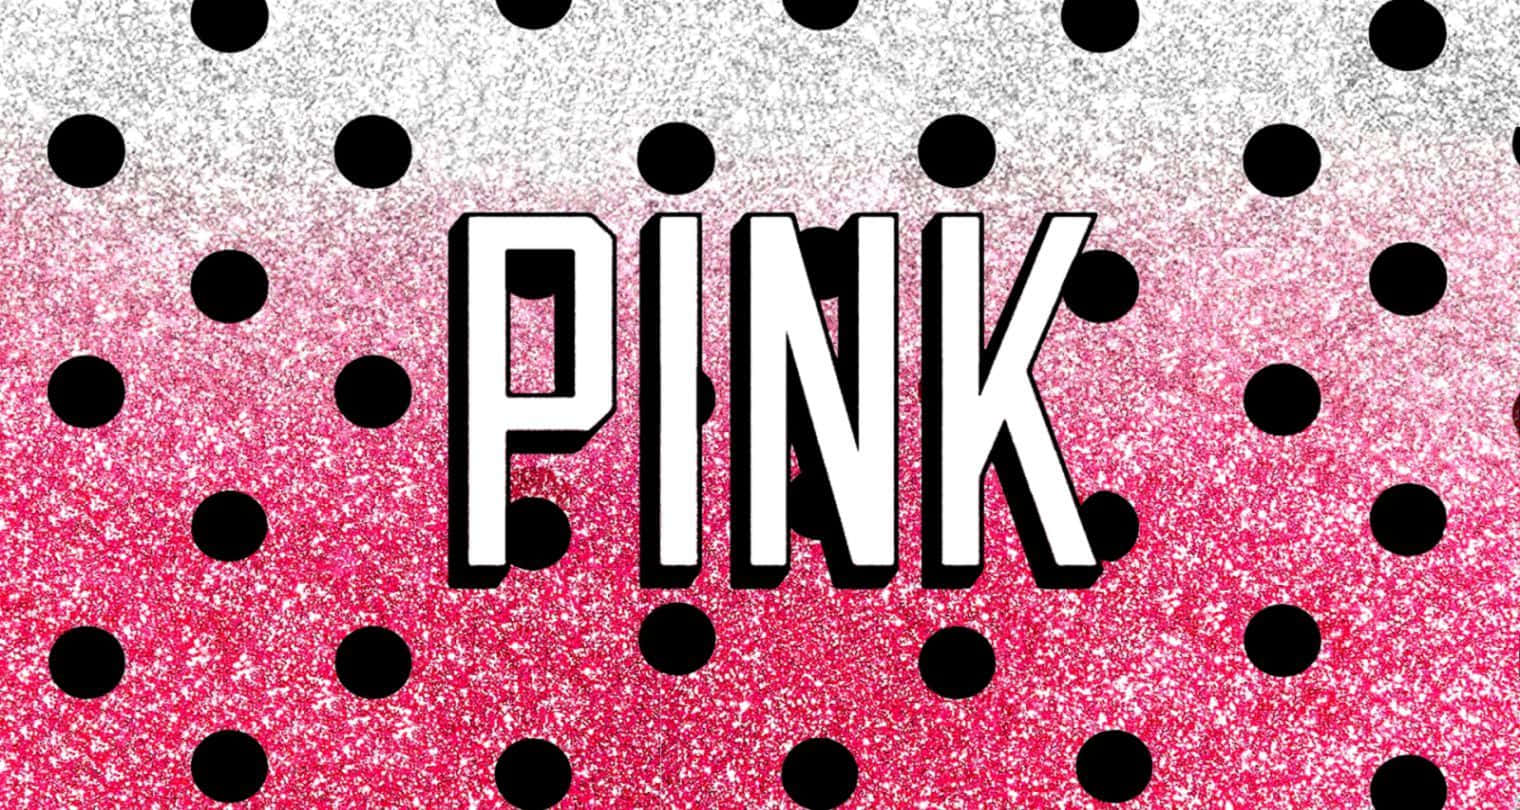 Únetea Pink Nation - Compra Ahora Para Destacarte. Fondo de pantalla